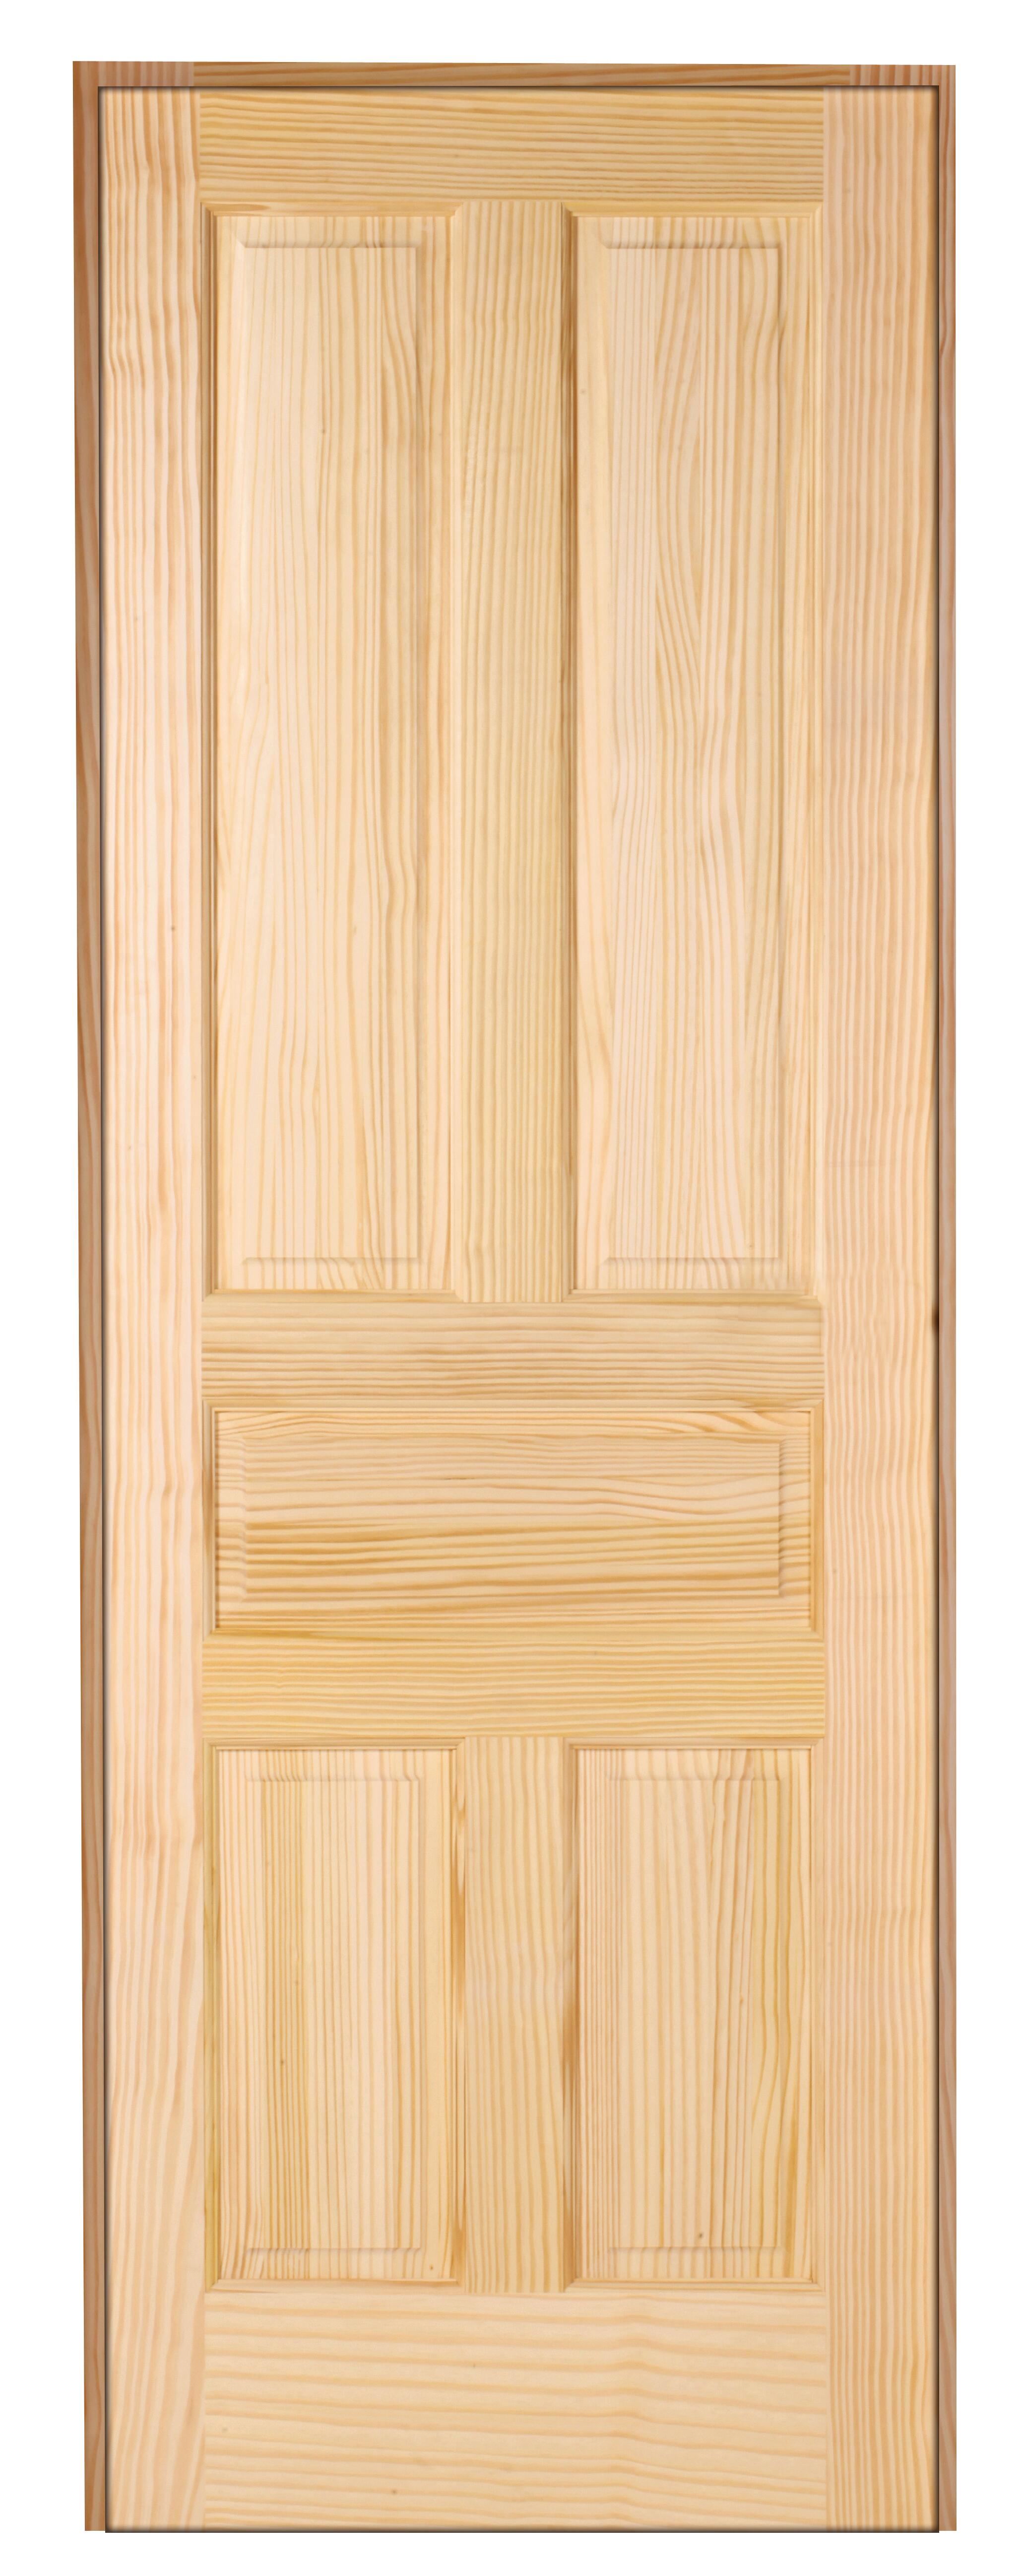 Puerta málaga pino de apertura izquierda de 72.5 cm